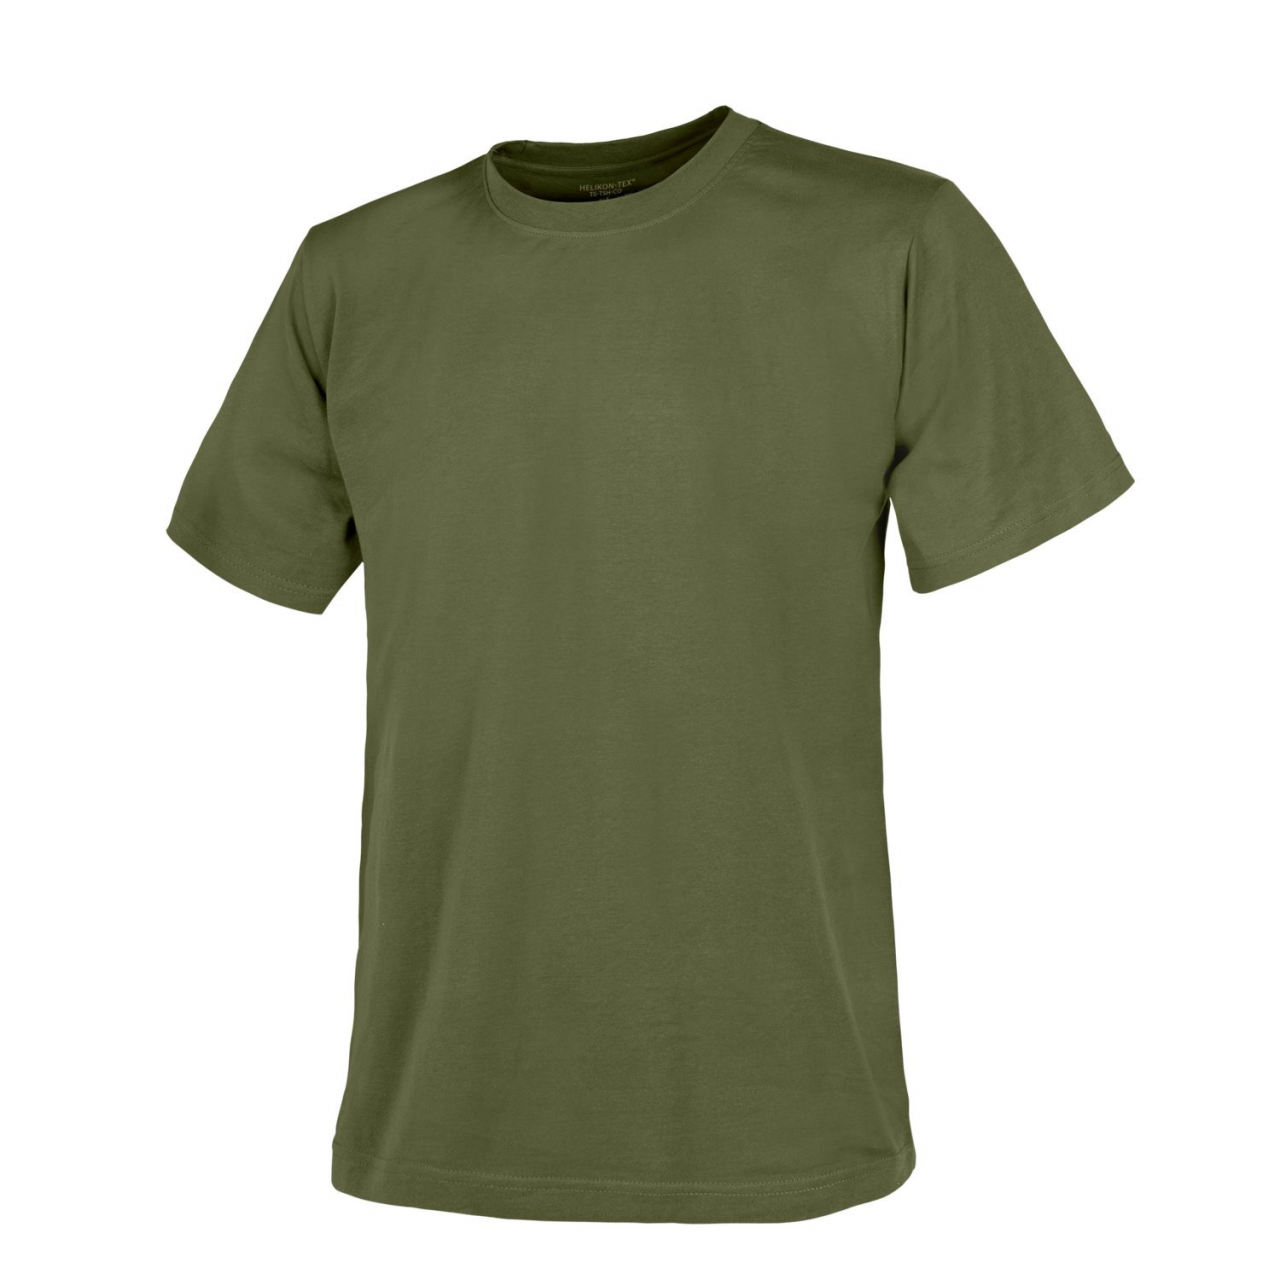 Tričko Helikon Classic Army - US green, S